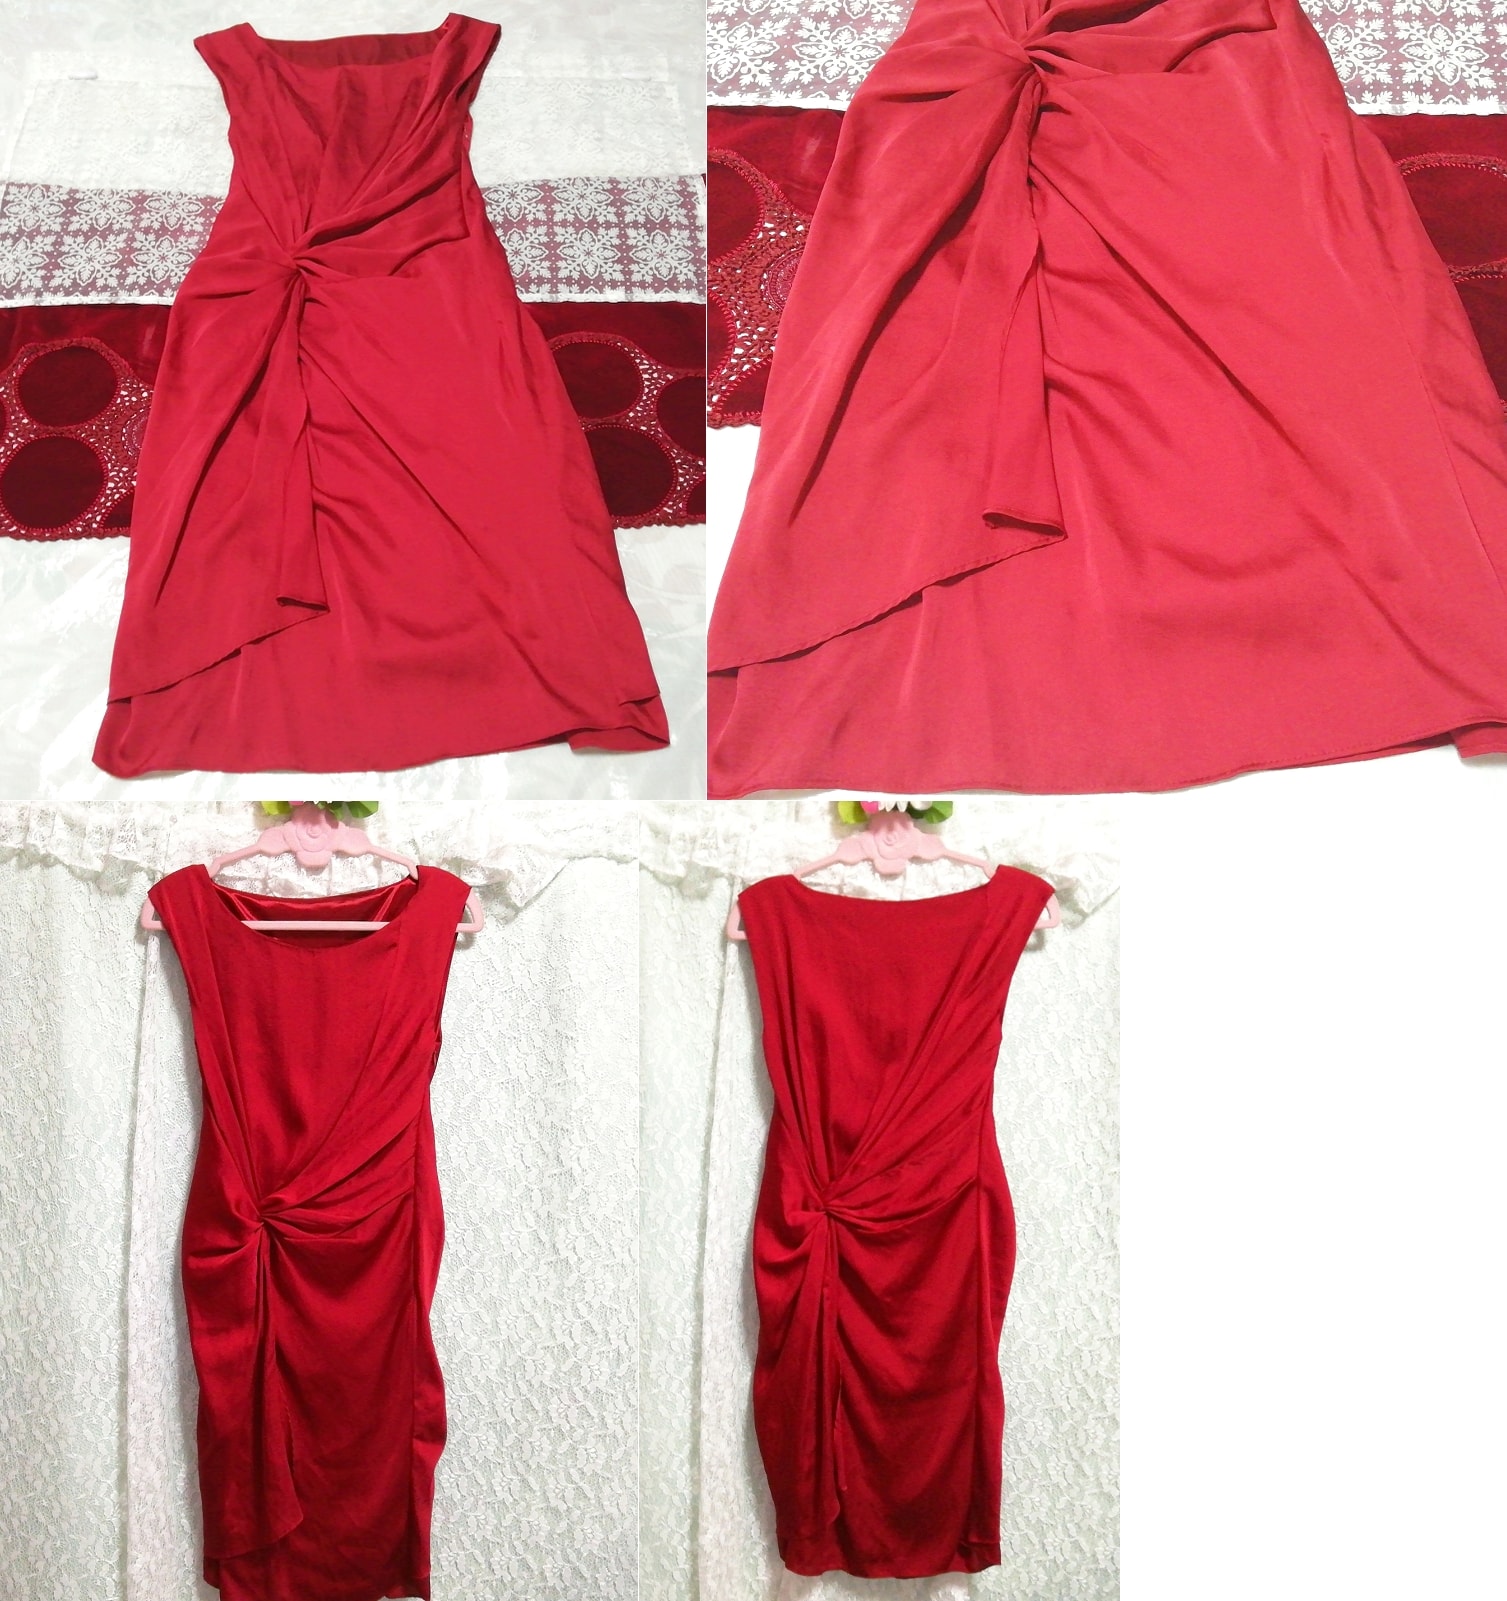 Camisón tipo negligee sin mangas de satén rojo vino tinto medio vestido, falda hasta la rodilla, talla m